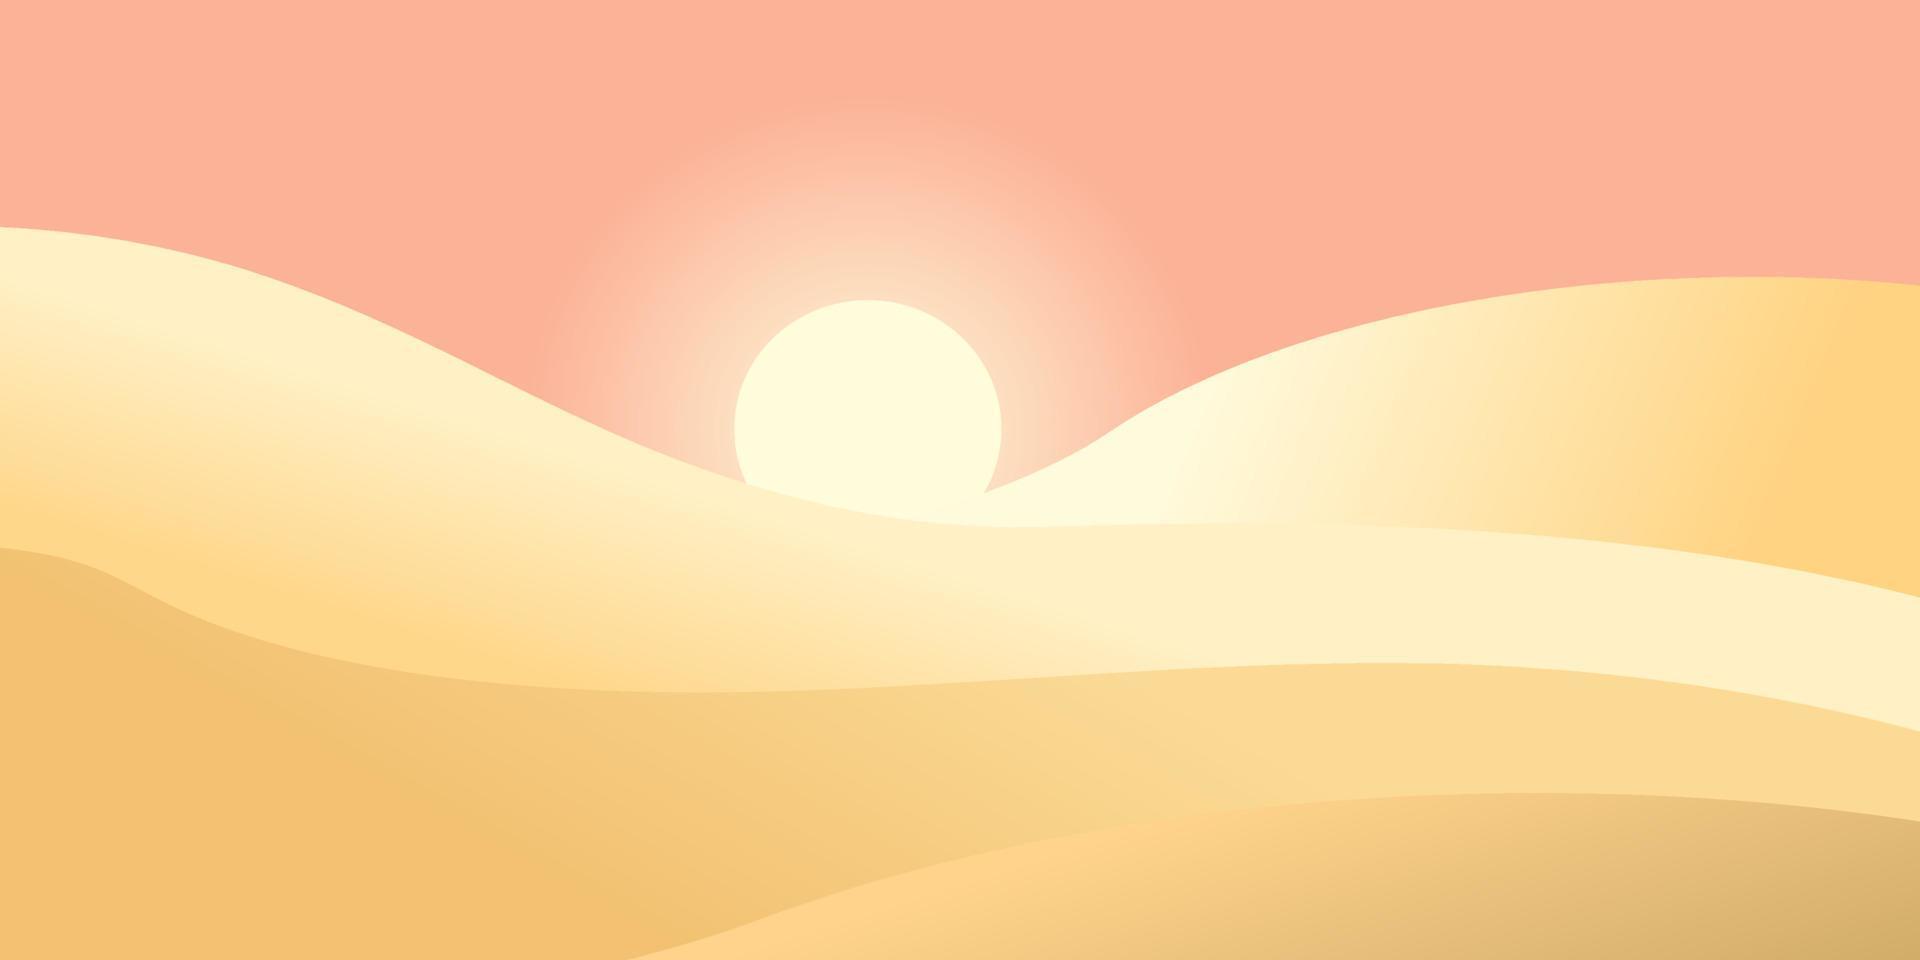 paisagem ondulada do deserto em estilo minimalista com pôr do sol e dunas. ilustração vetorial vetor